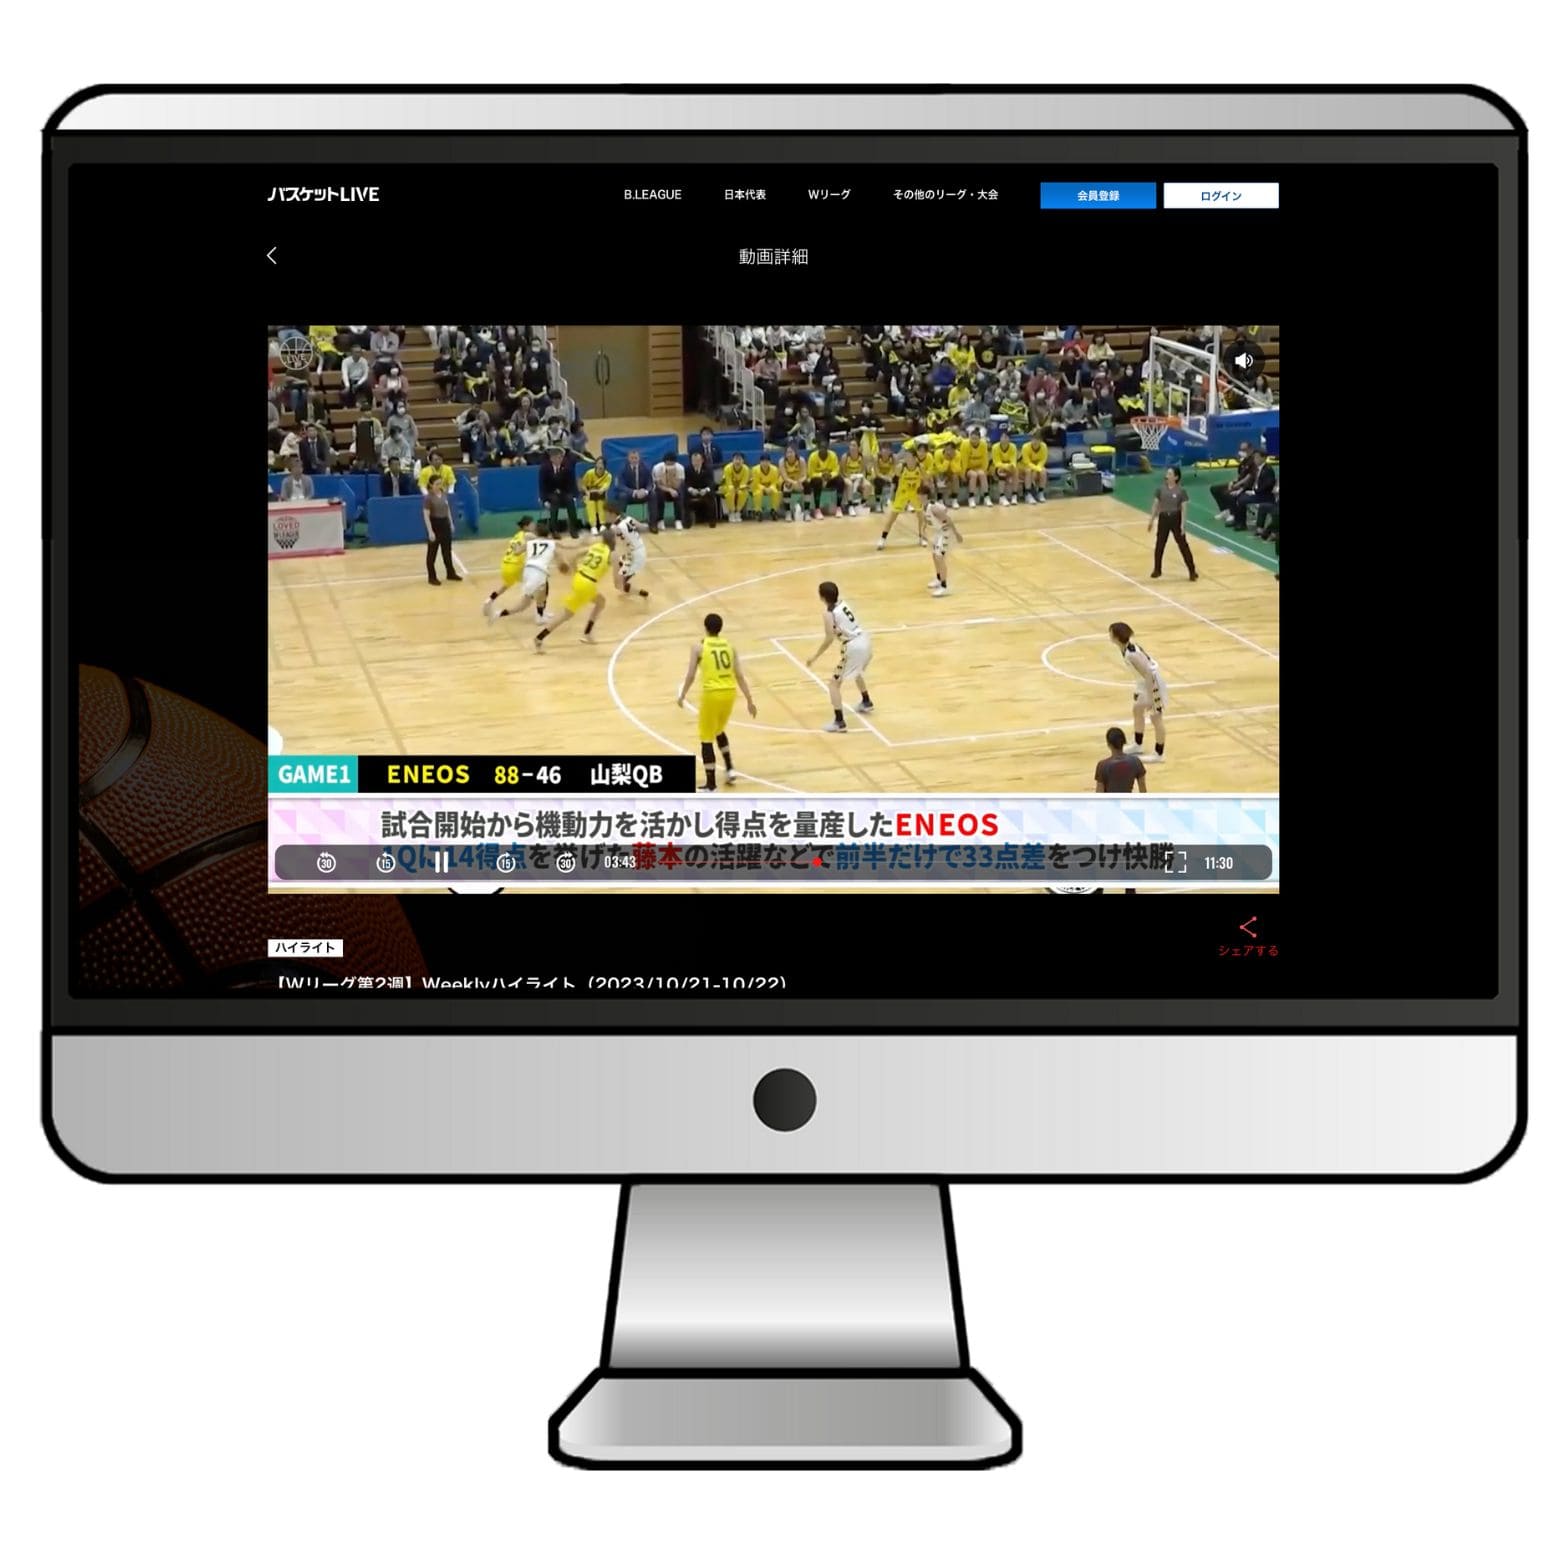 通常であれば海外からバスケットLIVEの動画を視聴することはできませんが、VPNに接続するとバスケットLIVEで配信されているライブ中継やBリーグの試合などの動画を問題なく視聴することができます。